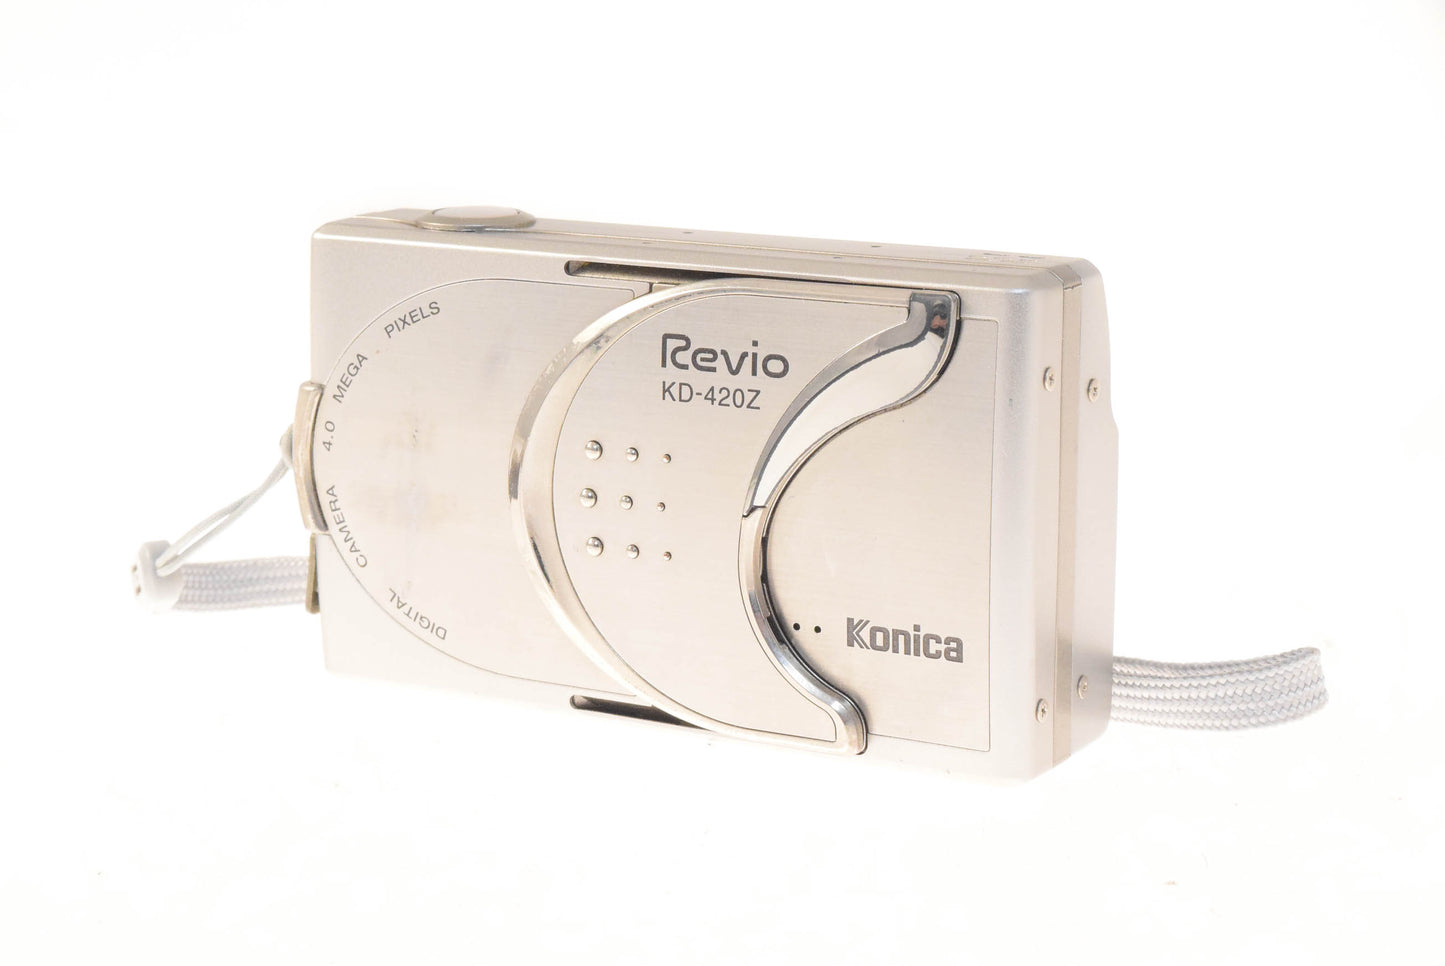 Konica KD-420Z Digital Revio - Camera